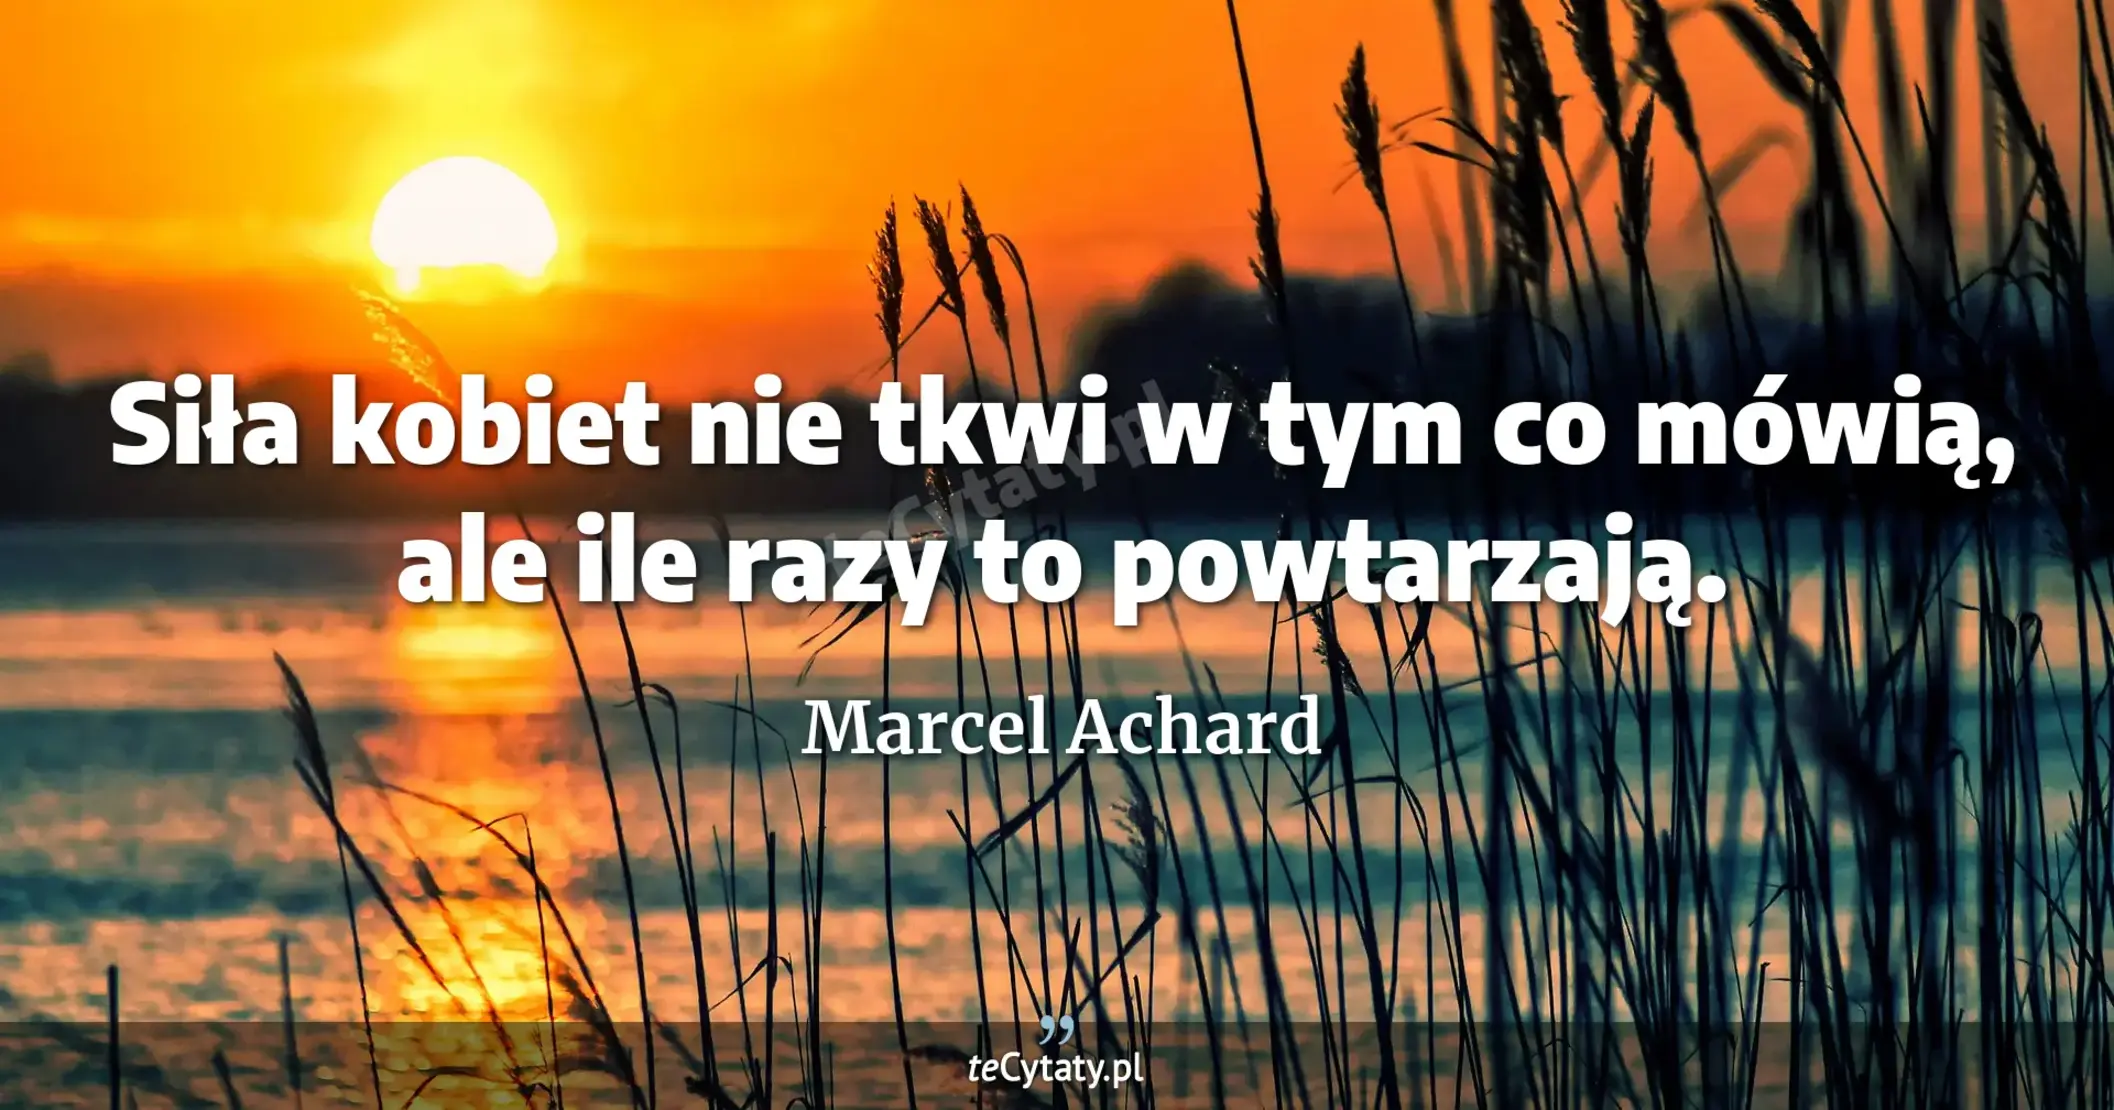 Siła kobiet nie tkwi w tym co mówią, ale ile razy to powtarzają. - Marcel Achard